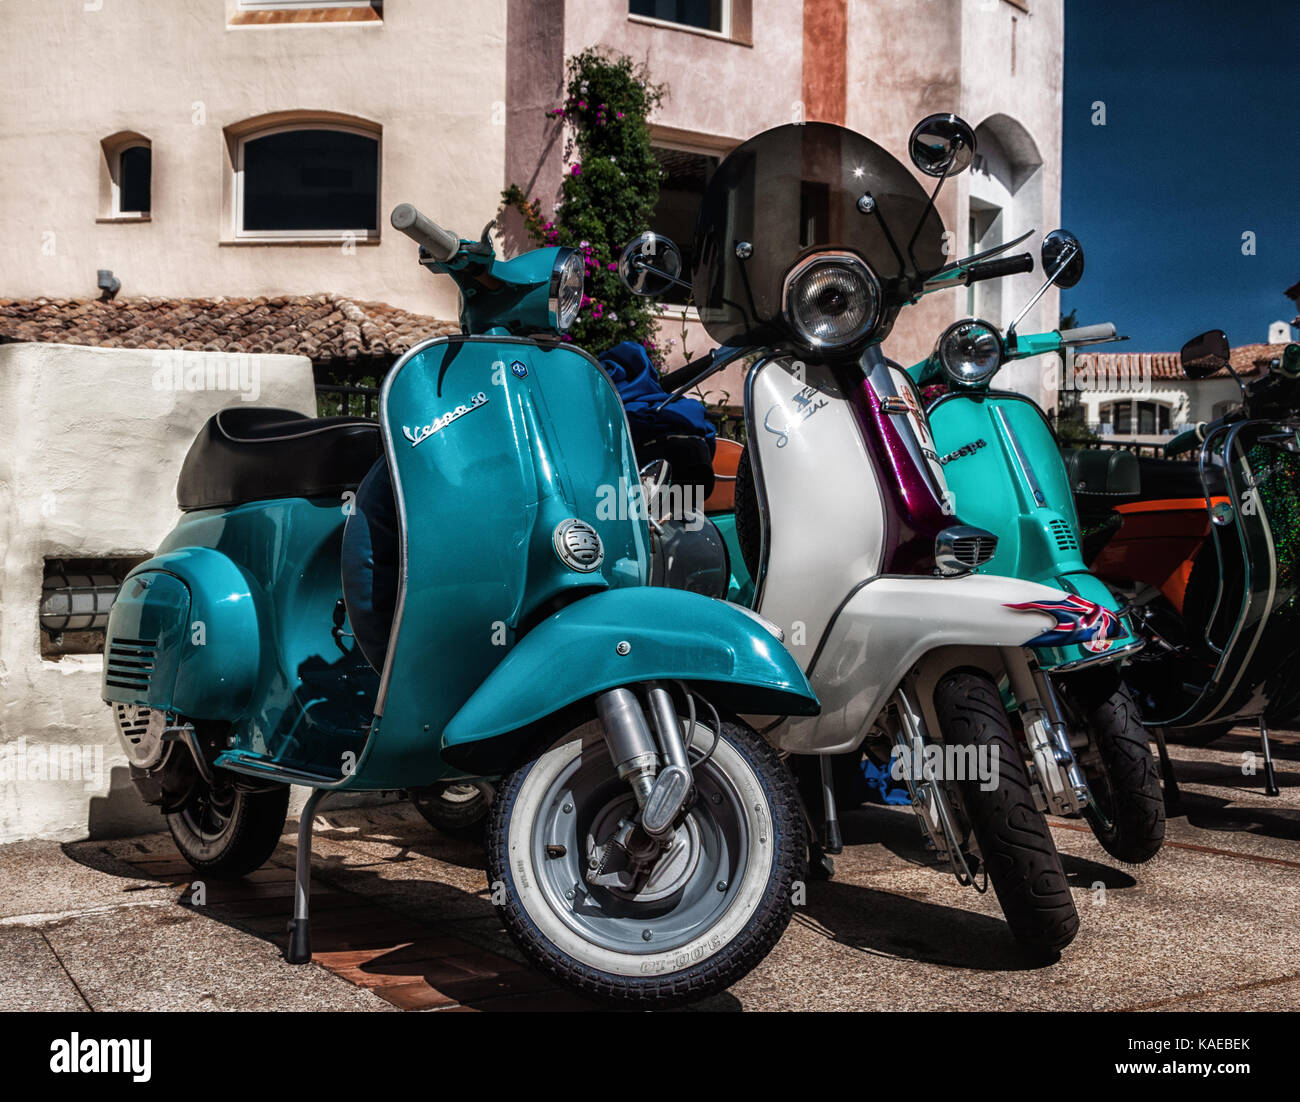 Porto cervo, Italia - 29 giugno 2016: Piaggio Vespa e lambrettavintage  sprint scooter moto motociclo Foto stock - Alamy